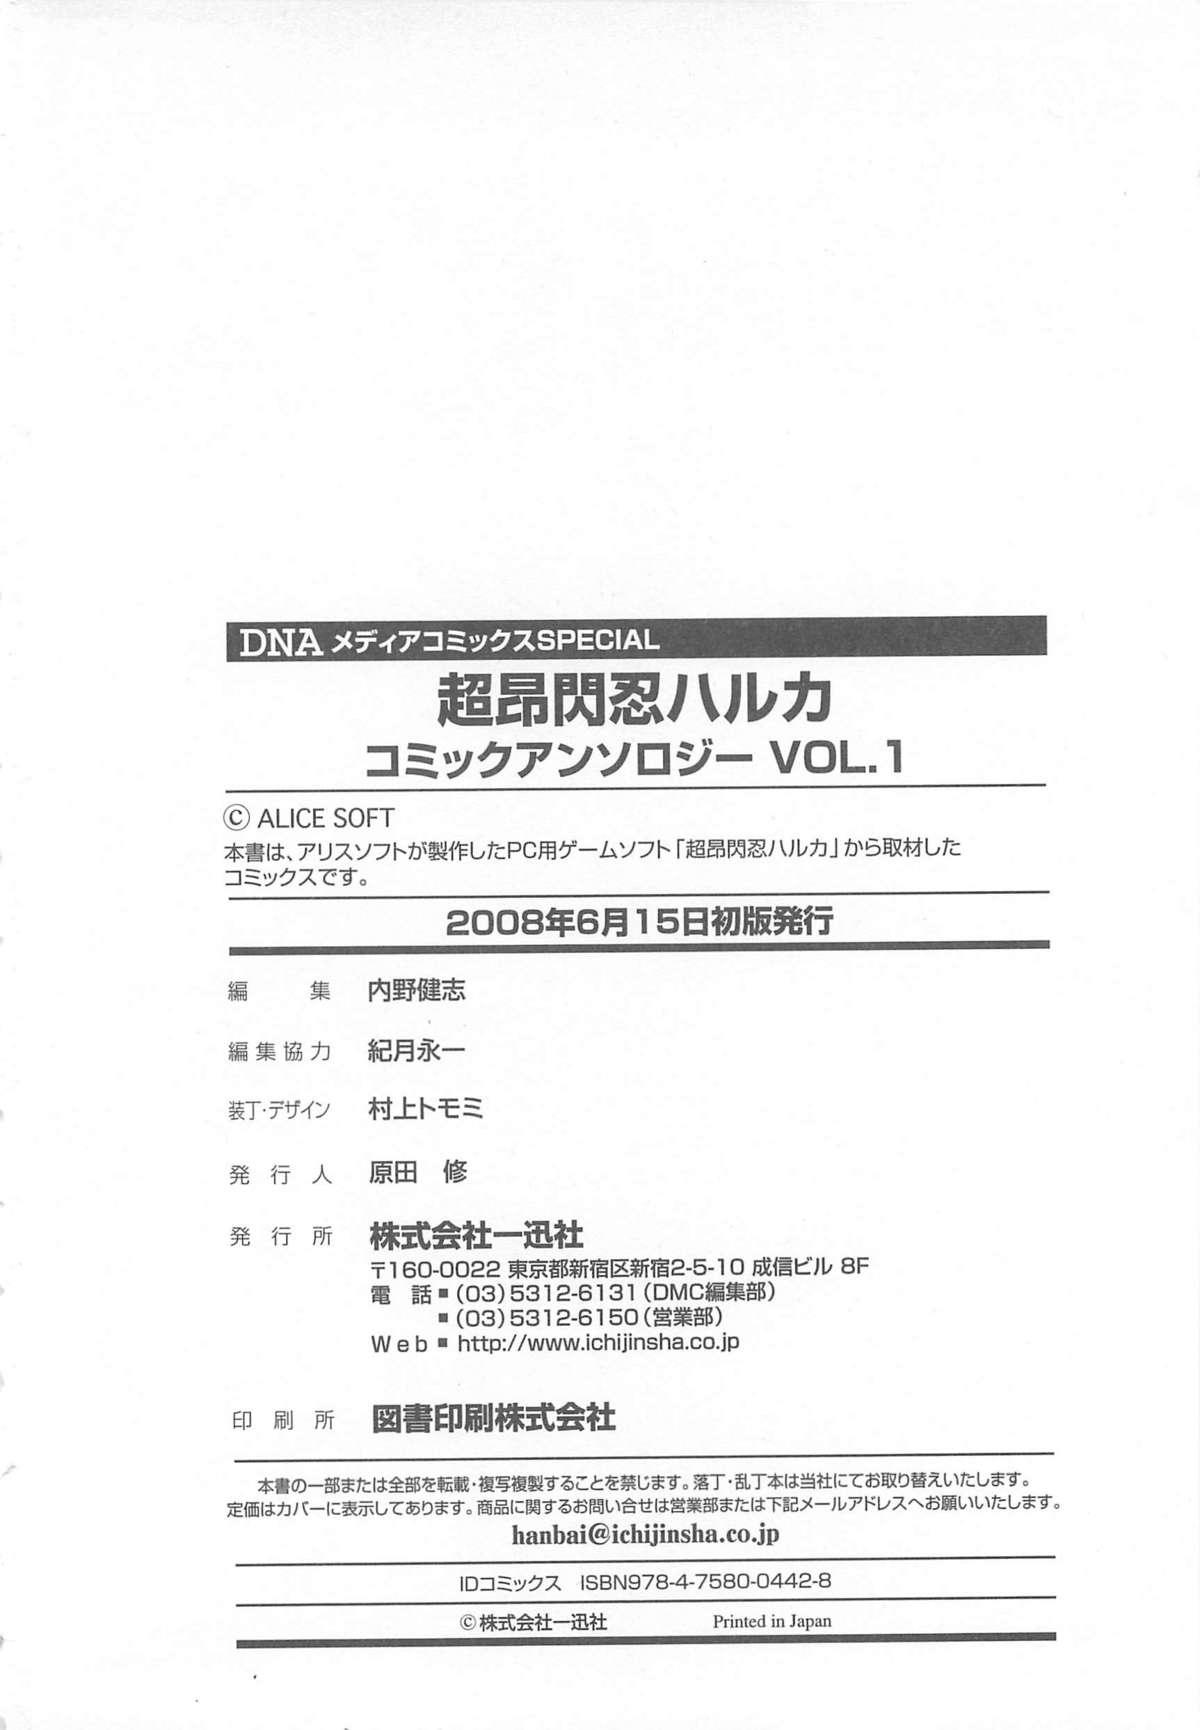 Choukou Sennin Haruka Comic Anthology Vol.1 158